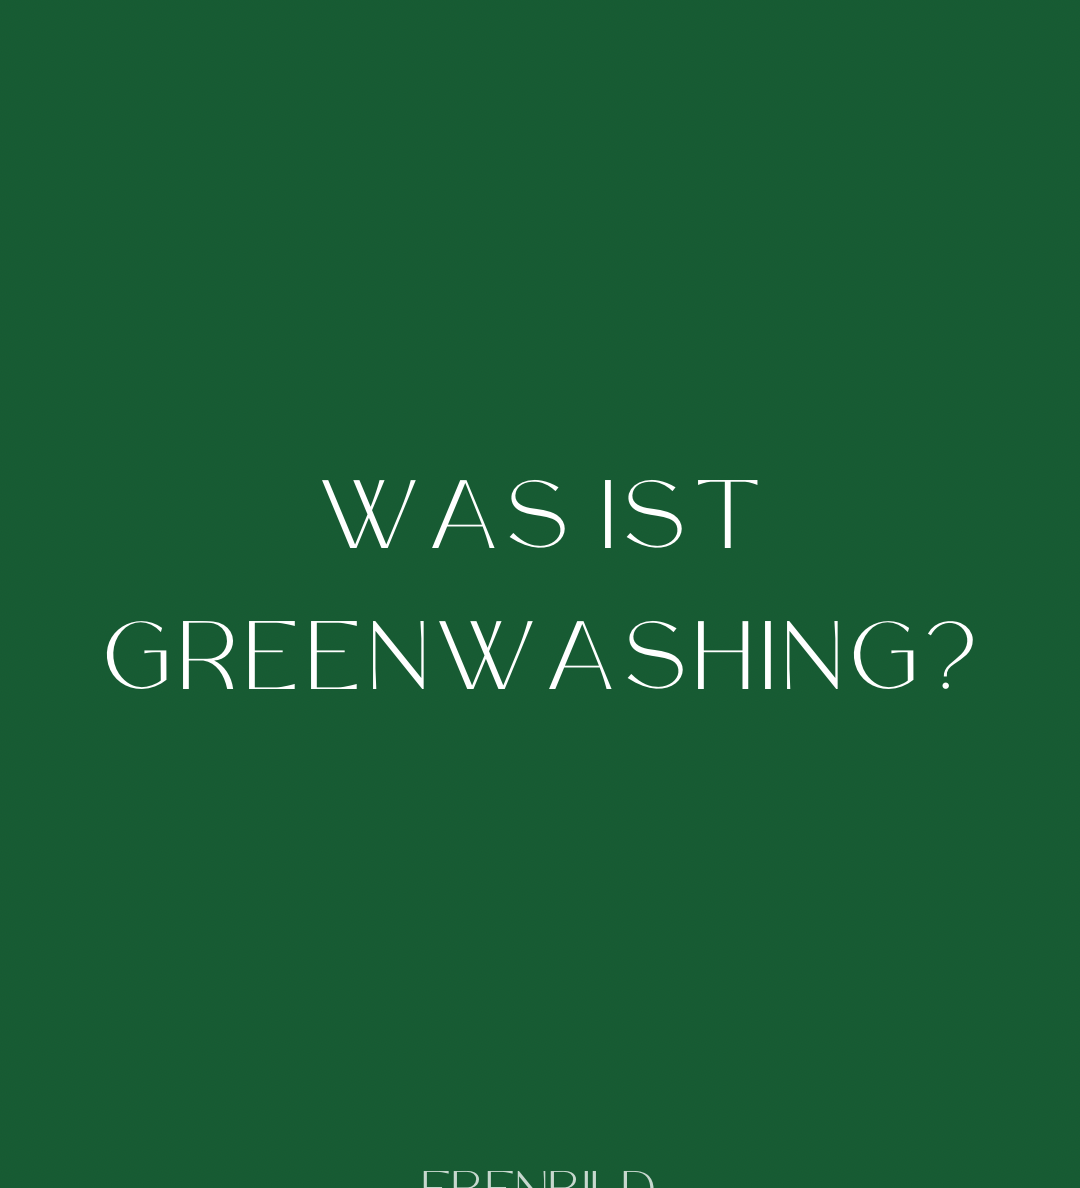 Greenwashing: Was ist das und woran erkennt man es?